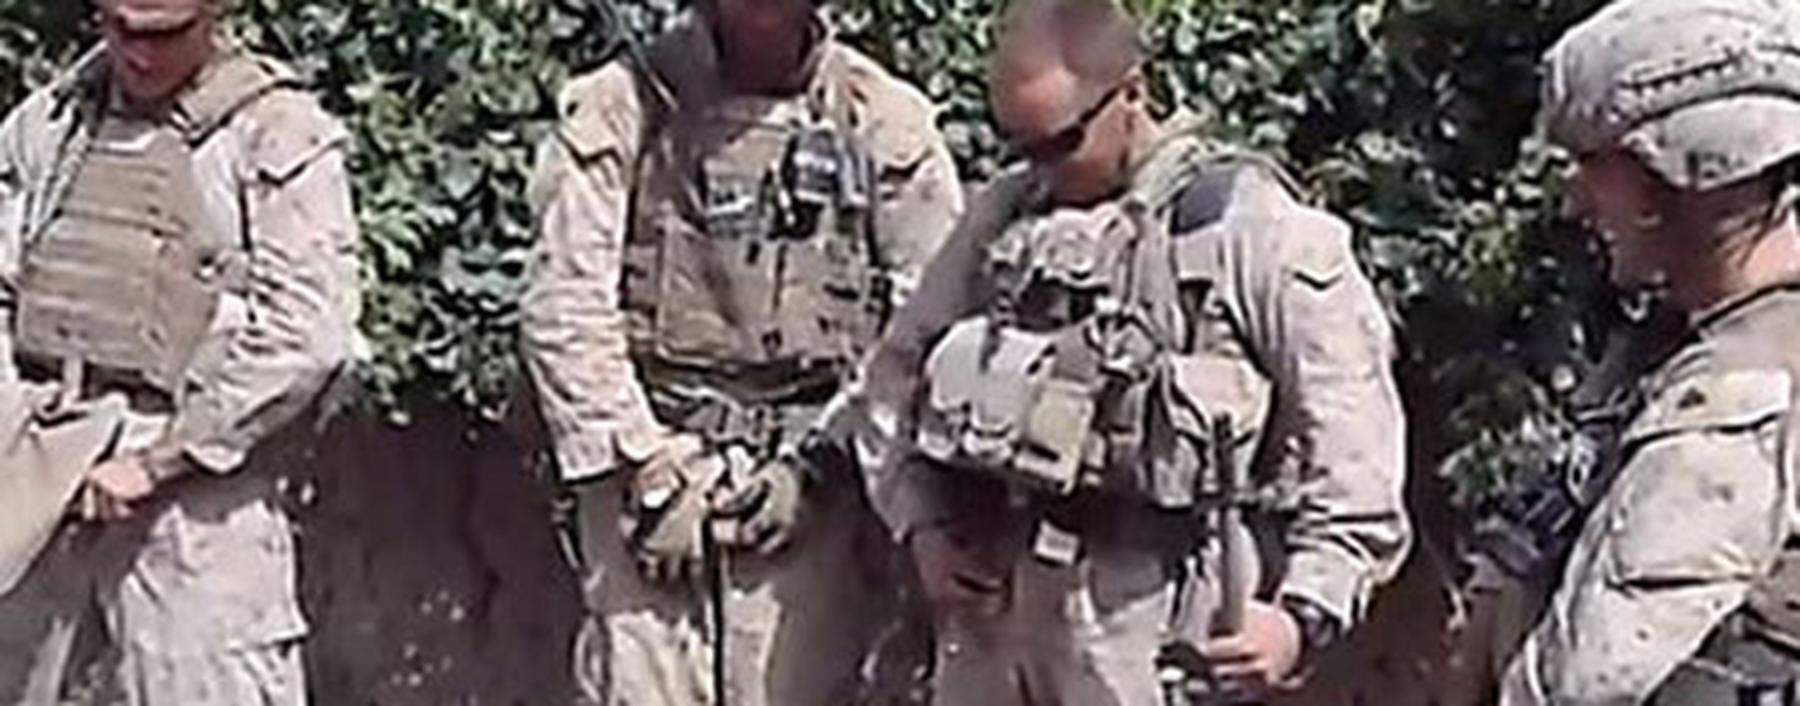 US-Soldaten urinieren in Afghanistan auf Leichen